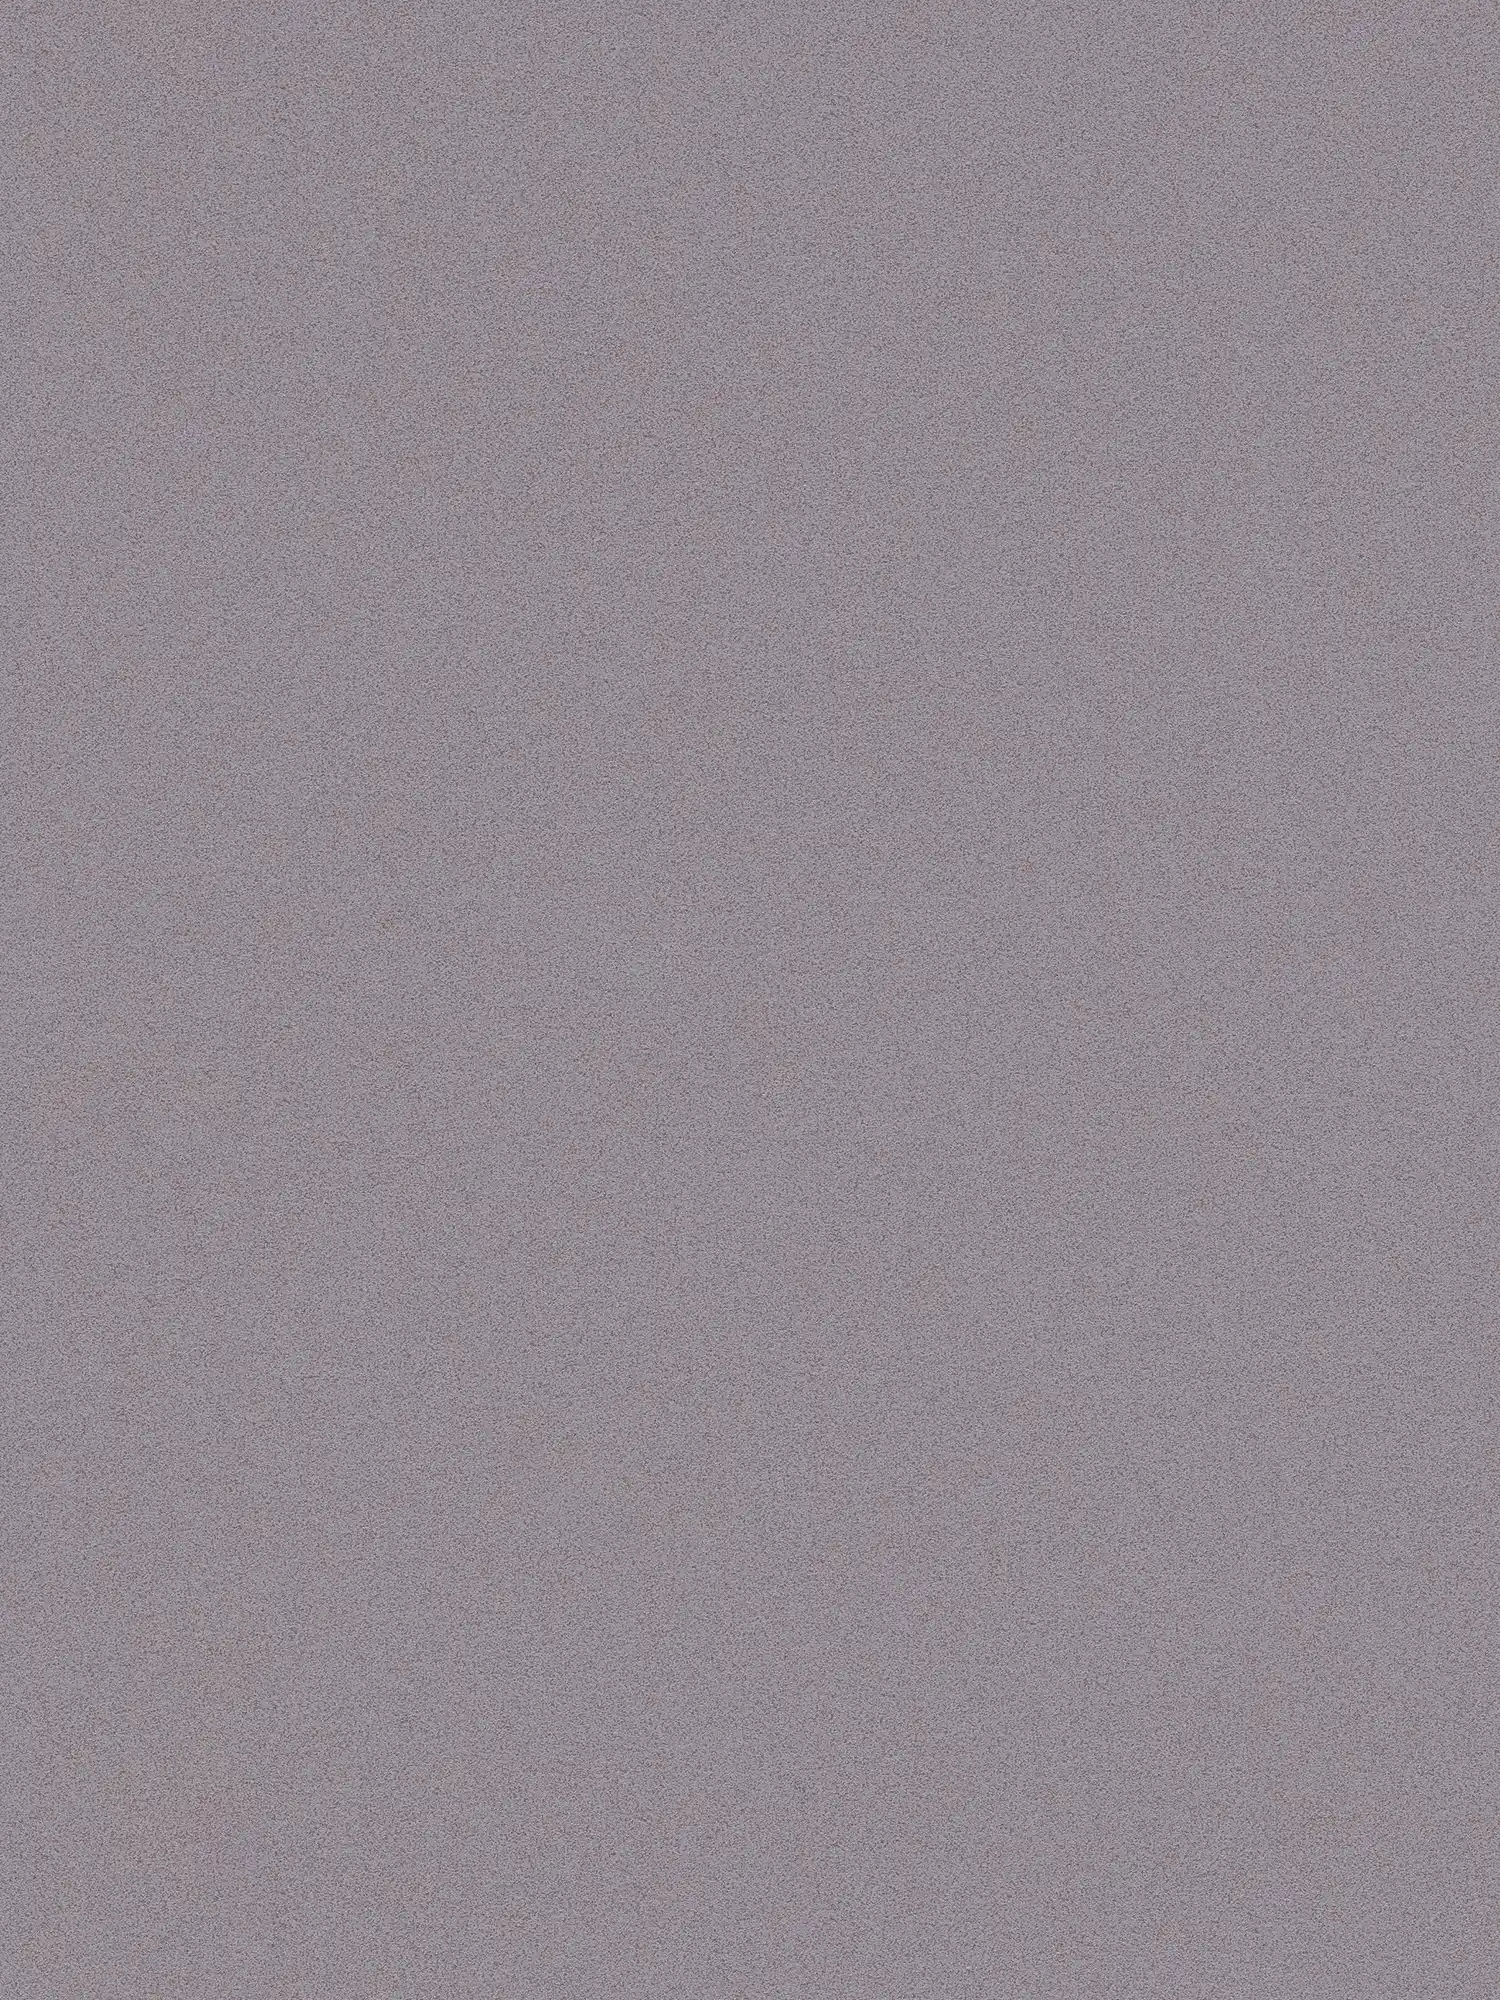 Papier peint gris pigeon & mat avec aspect chiné enduit fin
